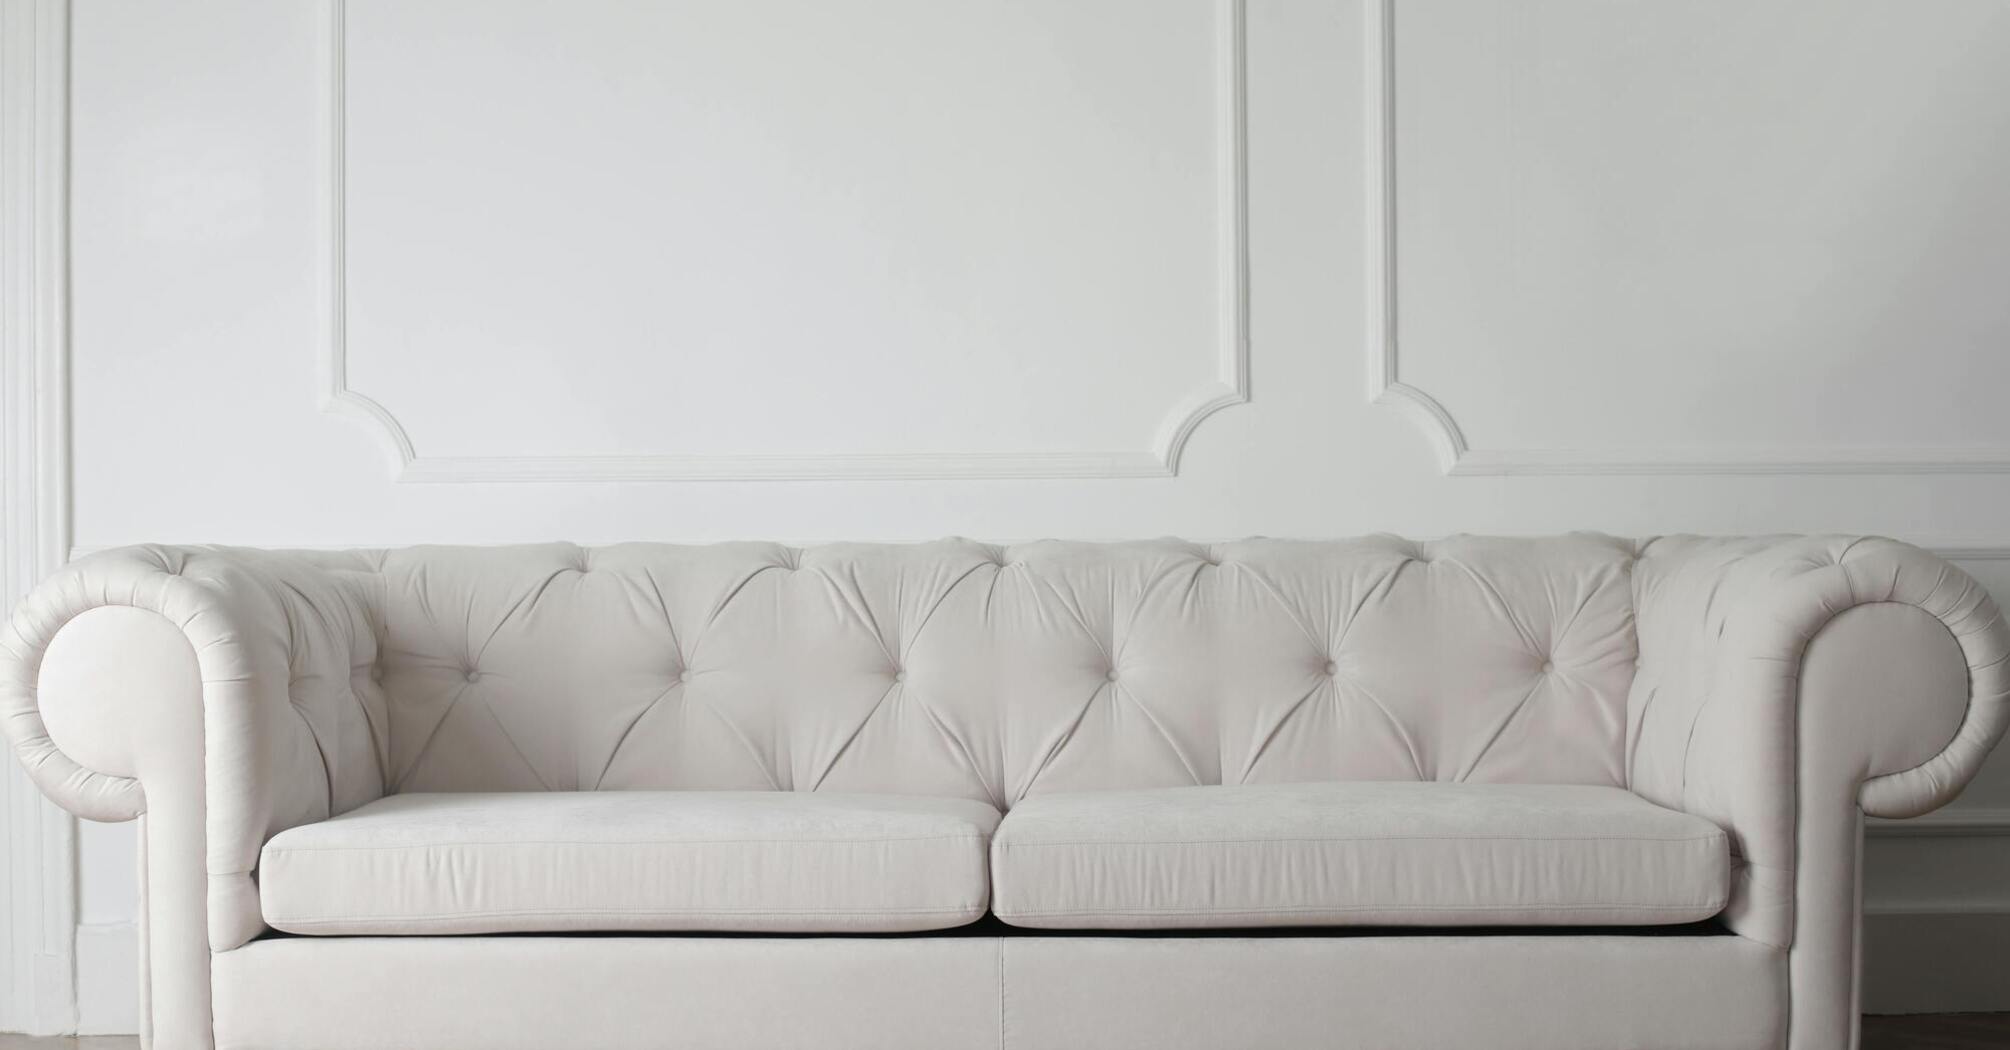 Как выбрать идеальный диван для дома: 3 интересных лайфхака